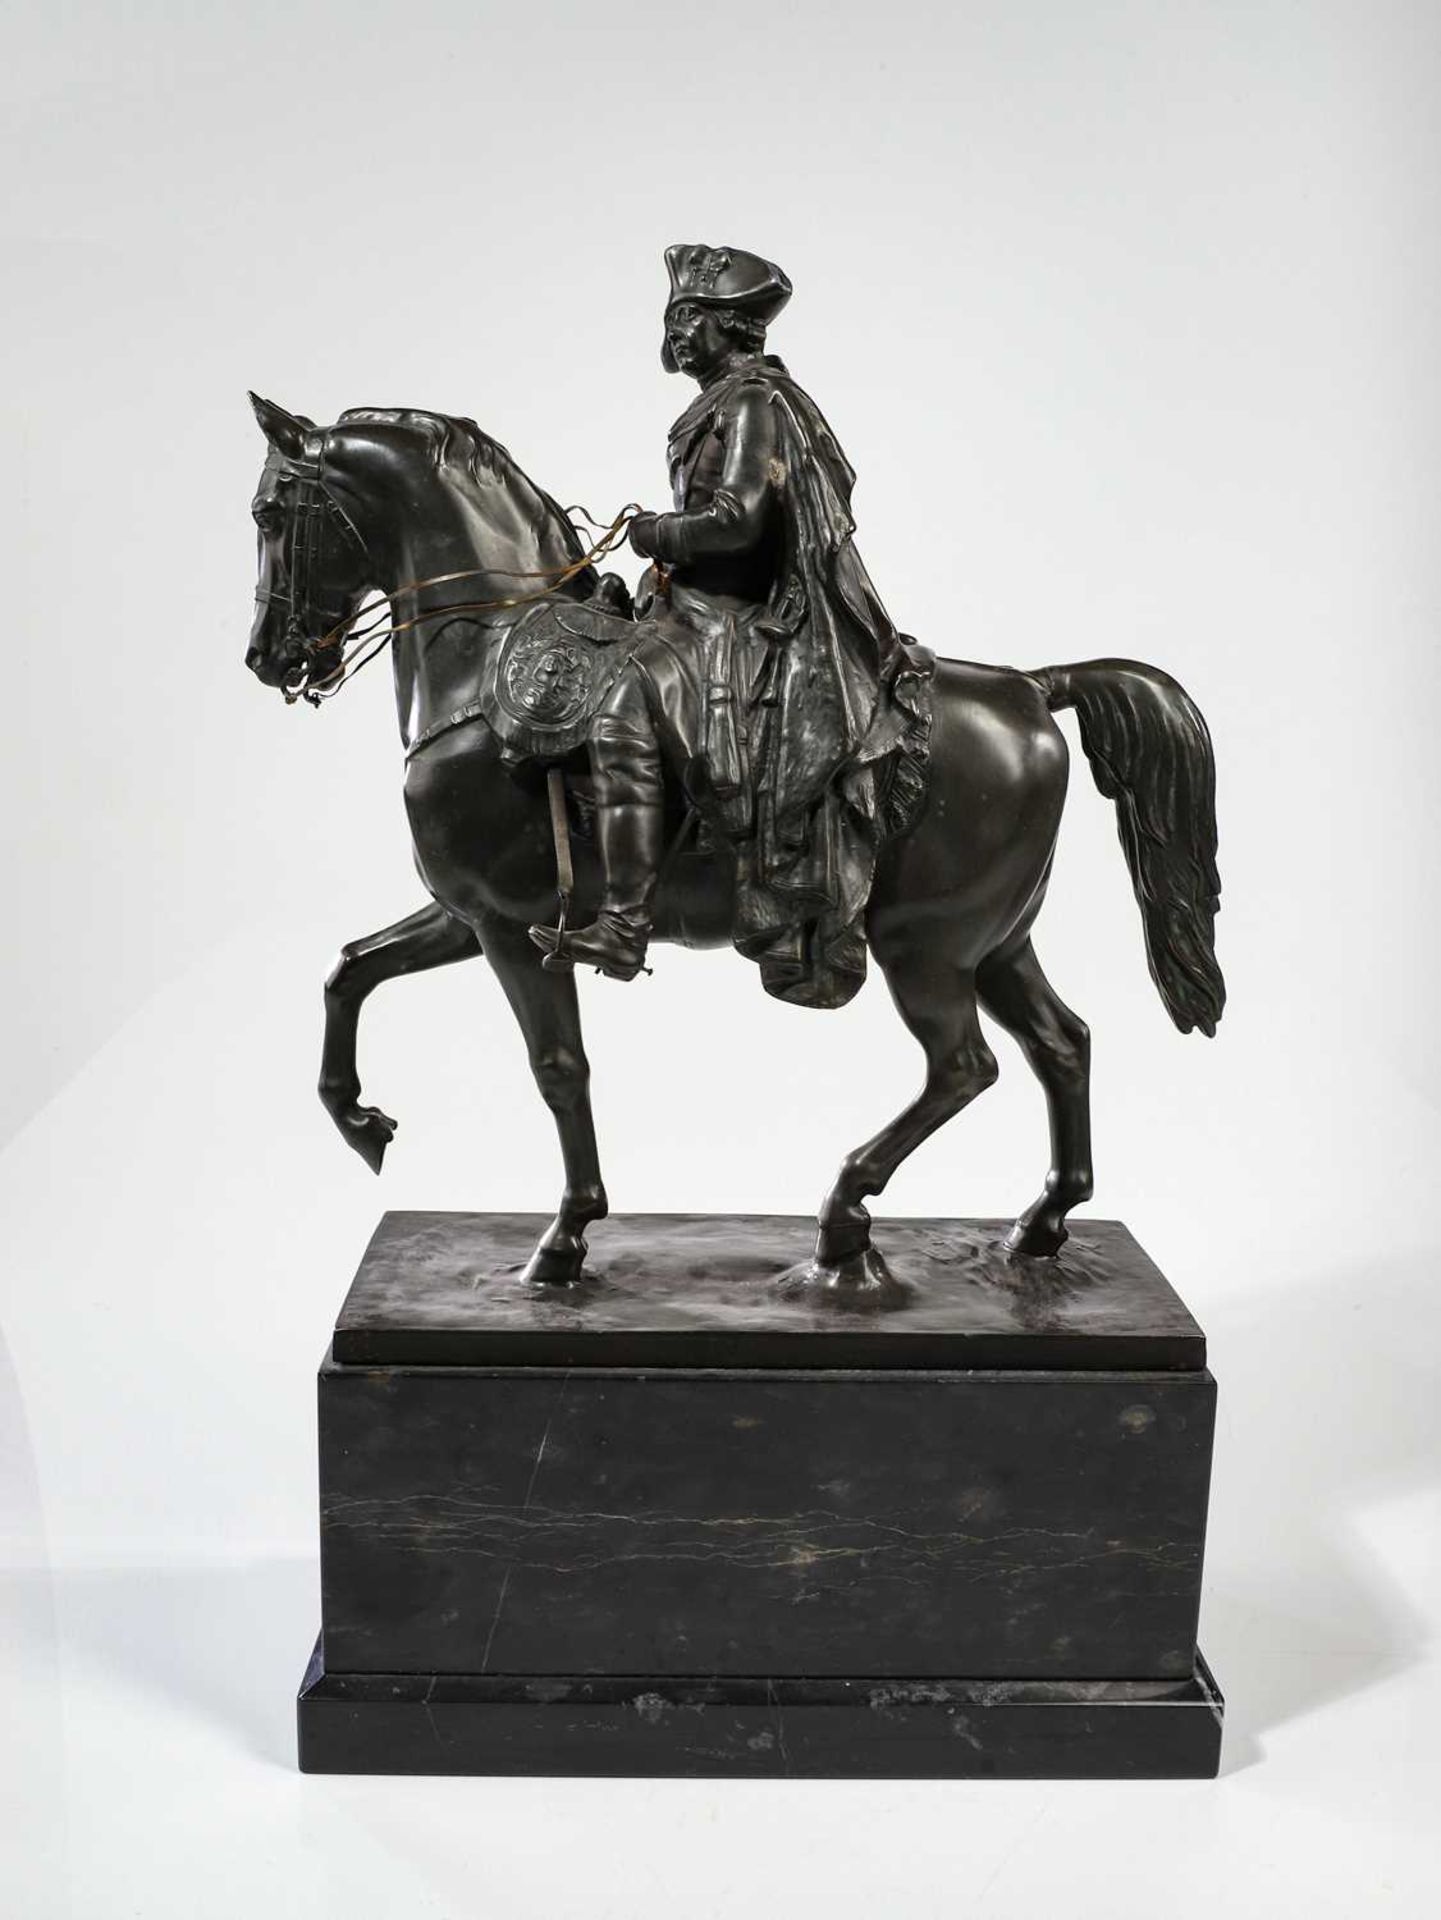 Skulptur von "Friedrich der Große" - Image 4 of 27